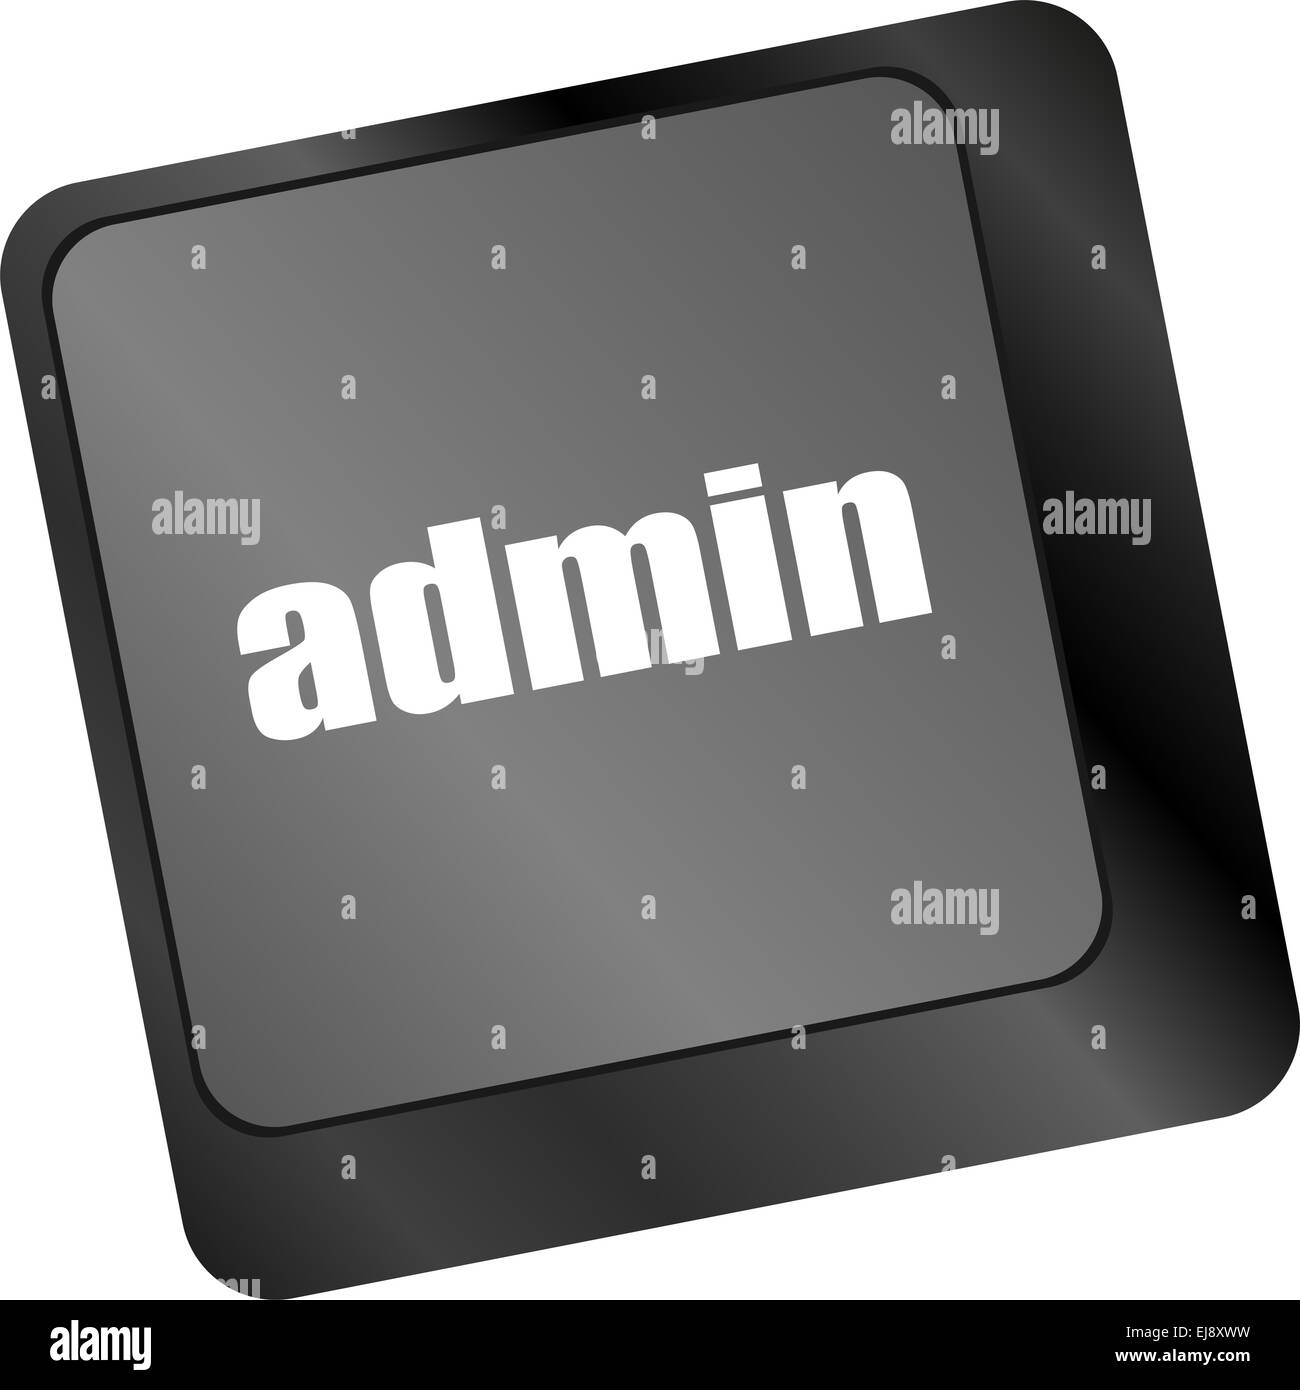 Bouton Admin sur les touches du clavier d'un ordinateur Banque D'Images